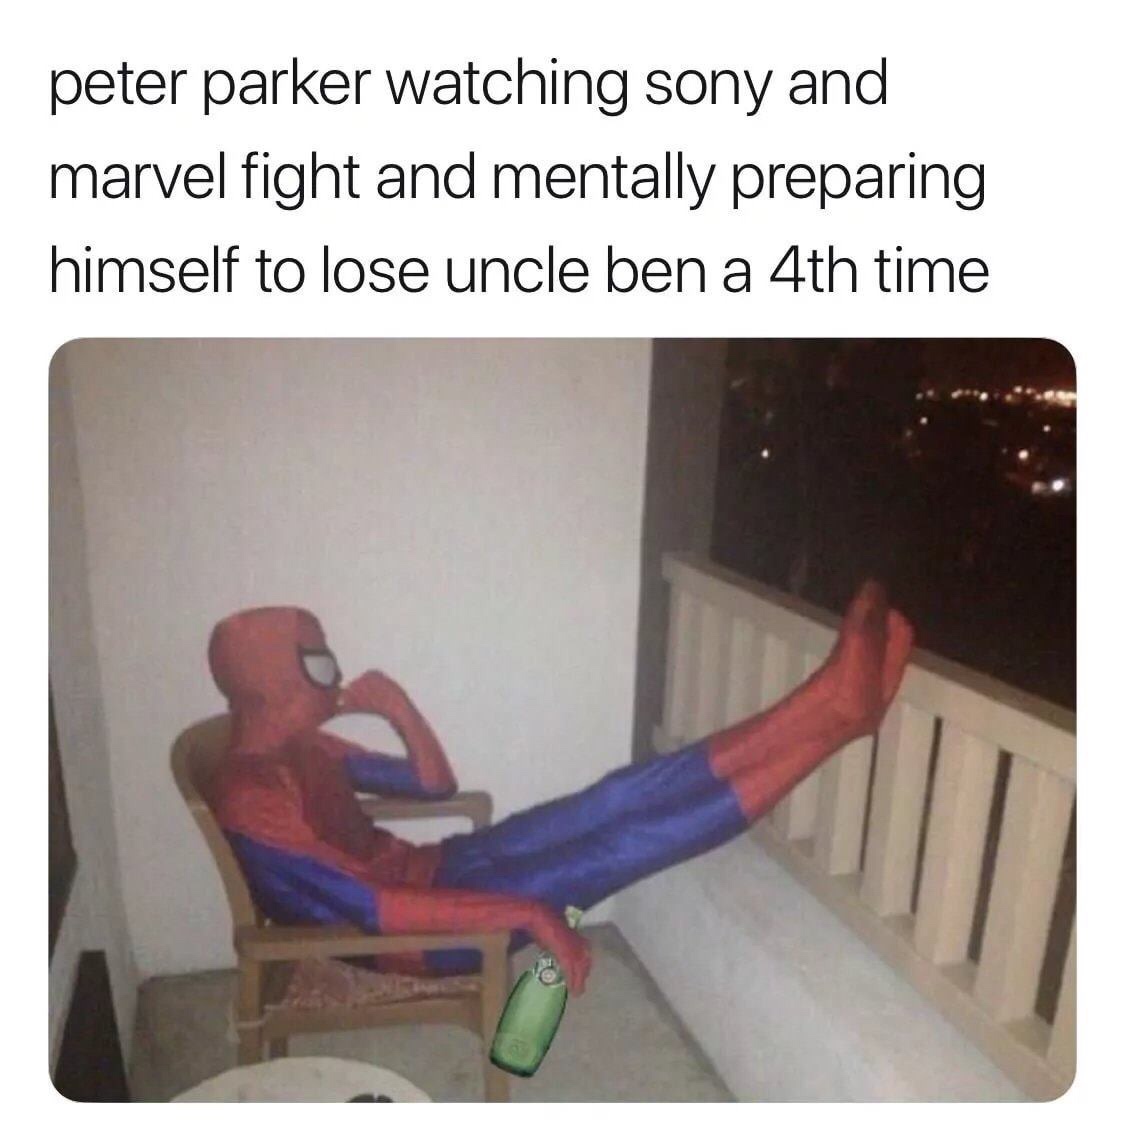 Ссора Marvel и Sony из-за «Человека-паука» вызвала волну иронии в сети: лучшие мемы. ФОТО